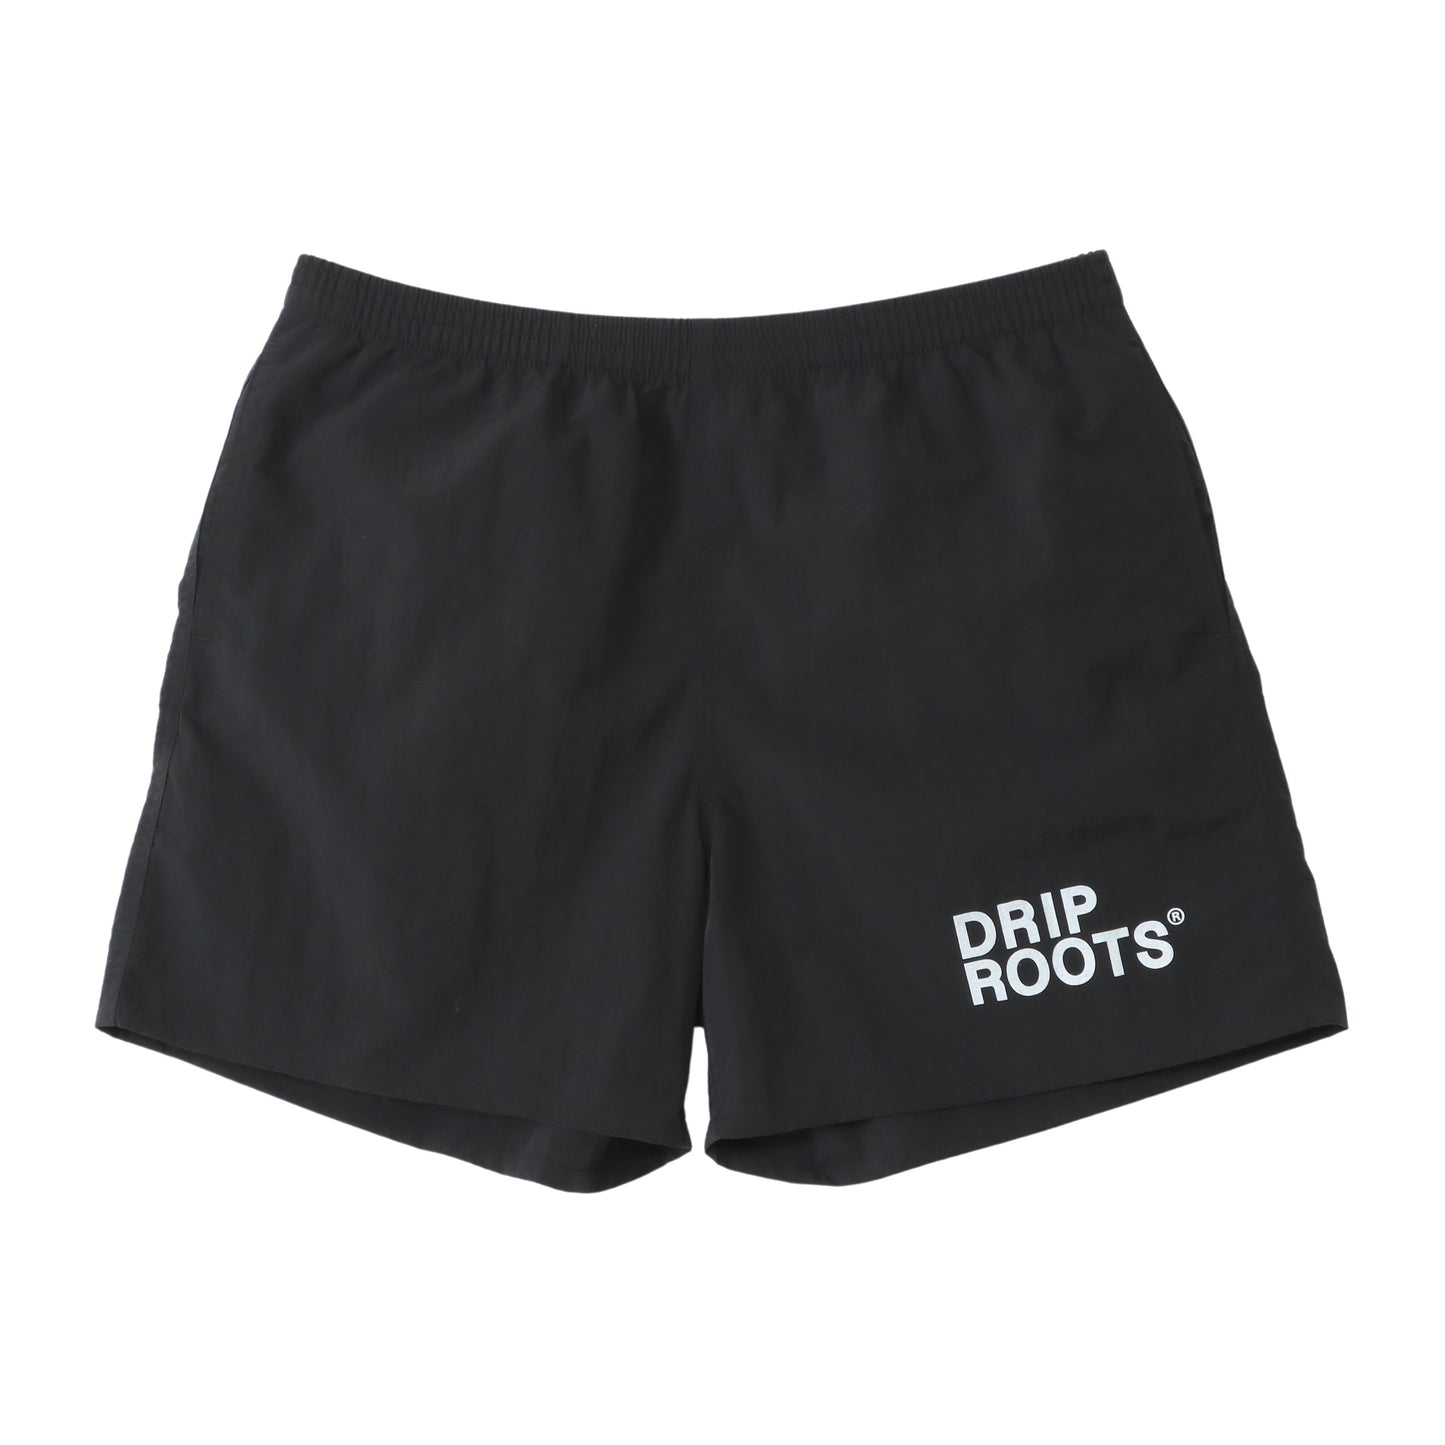 Stoic vibe shorts